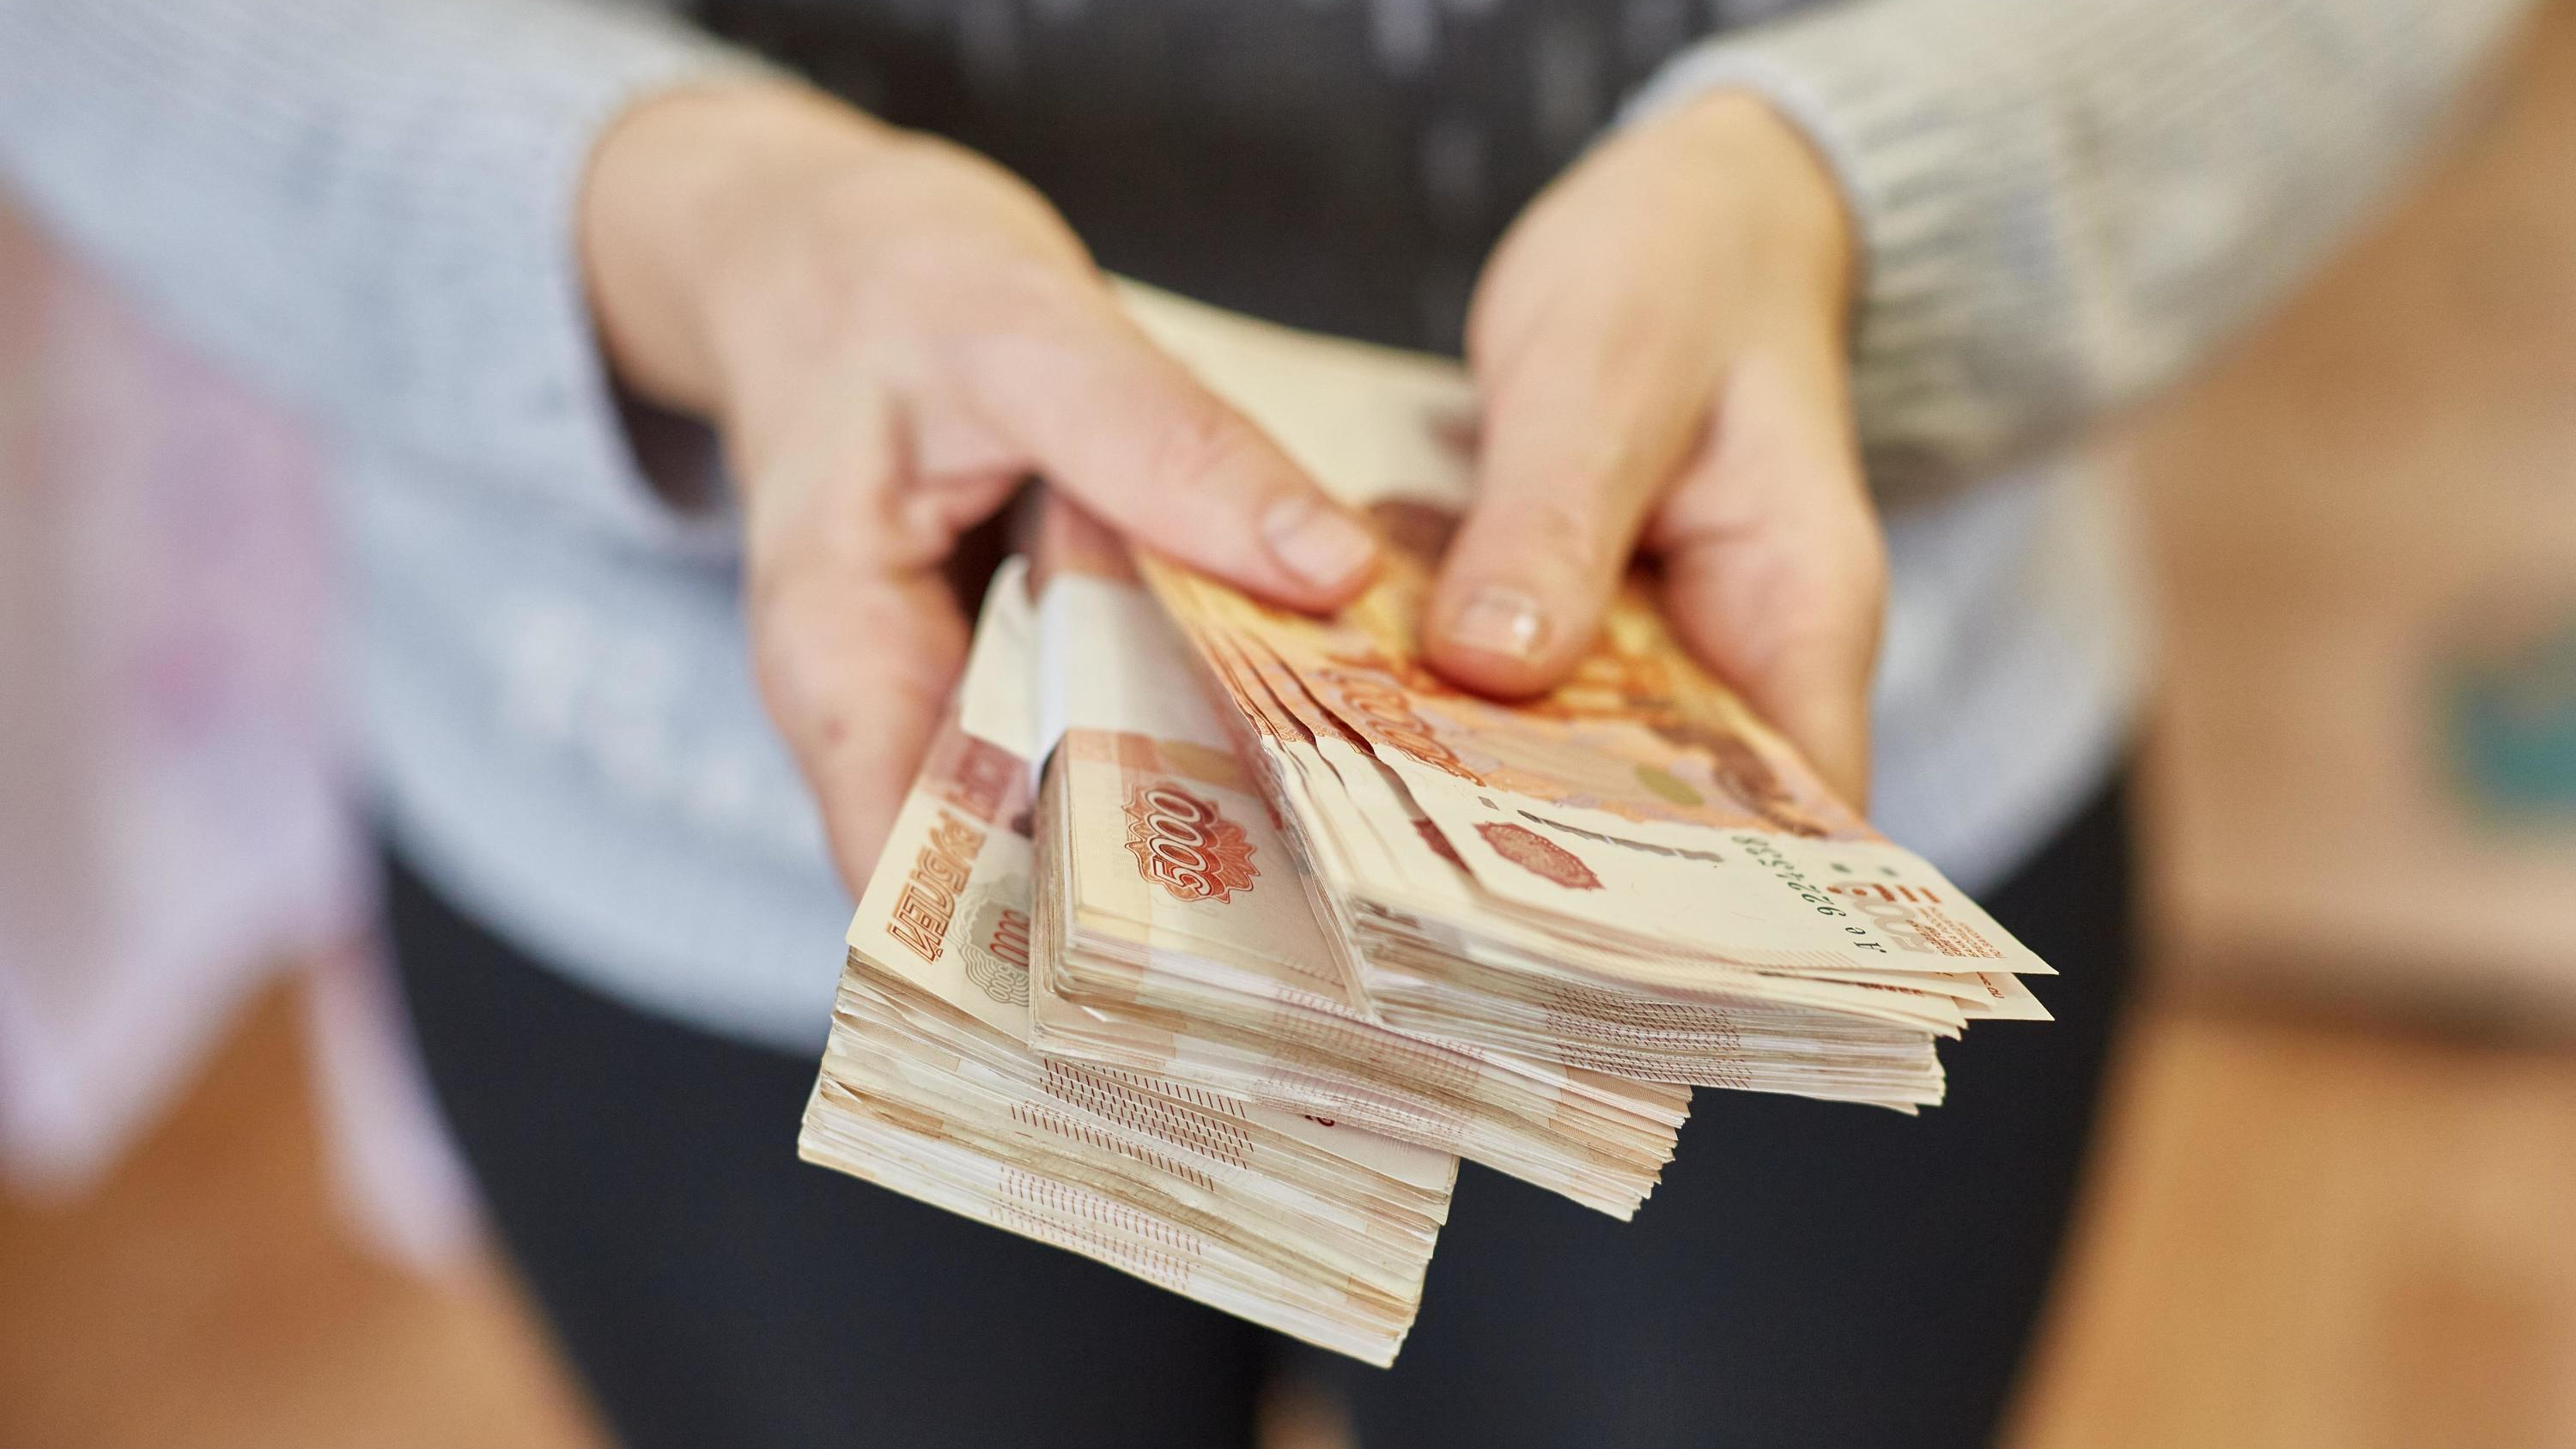 На юриста из Екатеринбурга навесили микрокредиты с огромными процентами. На ее месте может оказаться любой